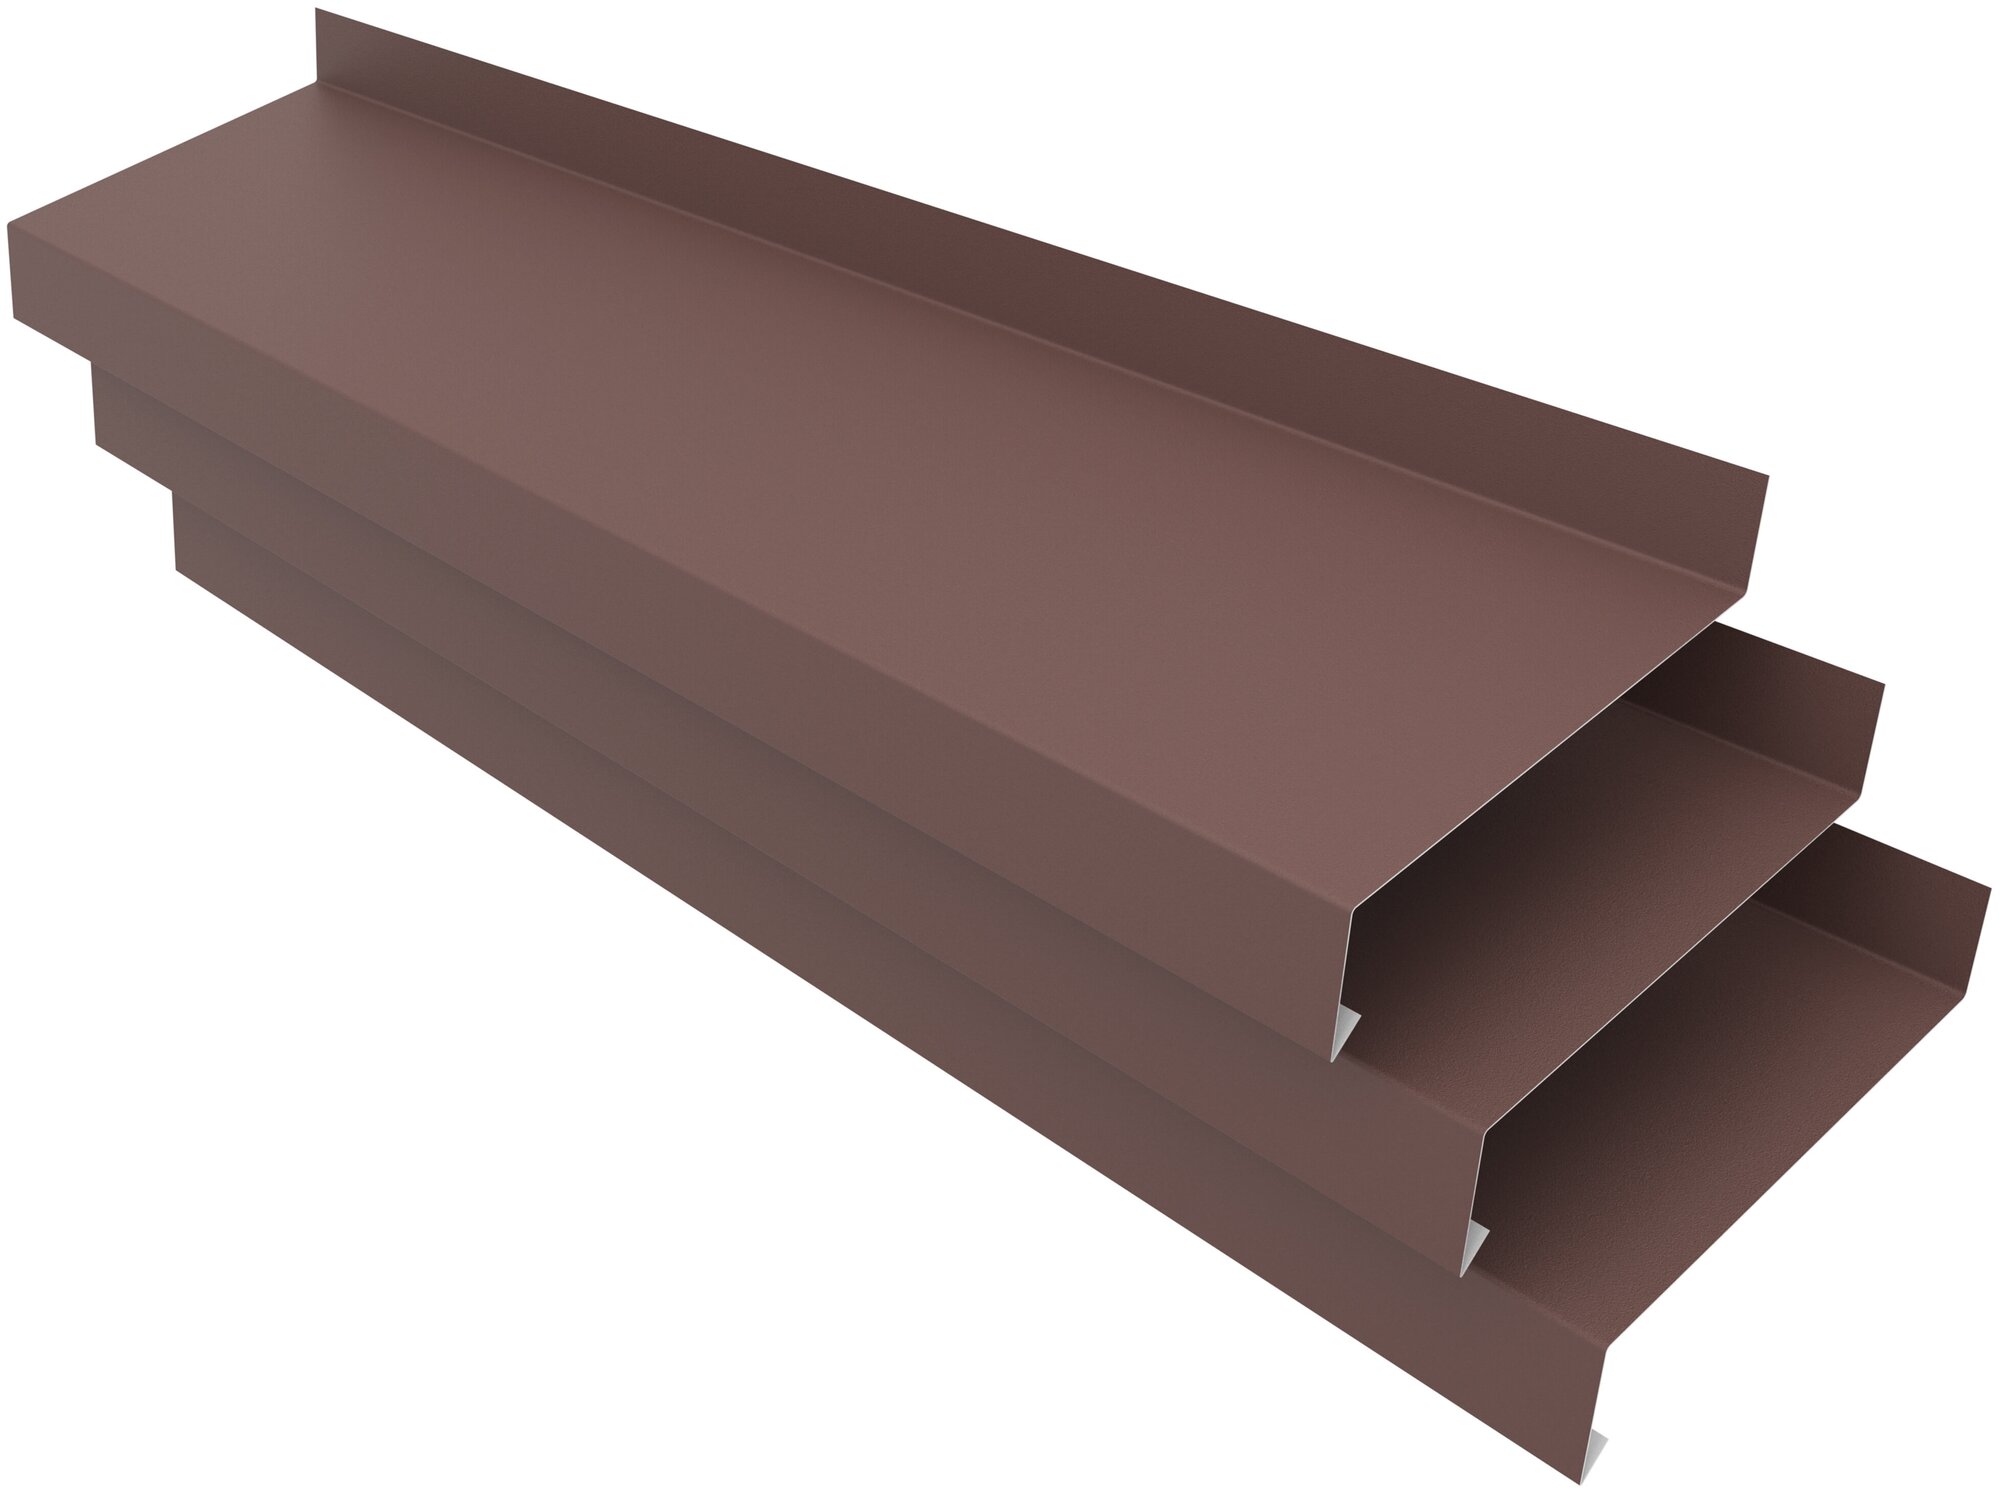 Отлив оконный ширина полки 190мм/ отлив для окна / планка отлива, цвет коричневый(RAL 8017) Длина 1,25м, 3 штуки в комплекте - фотография № 1